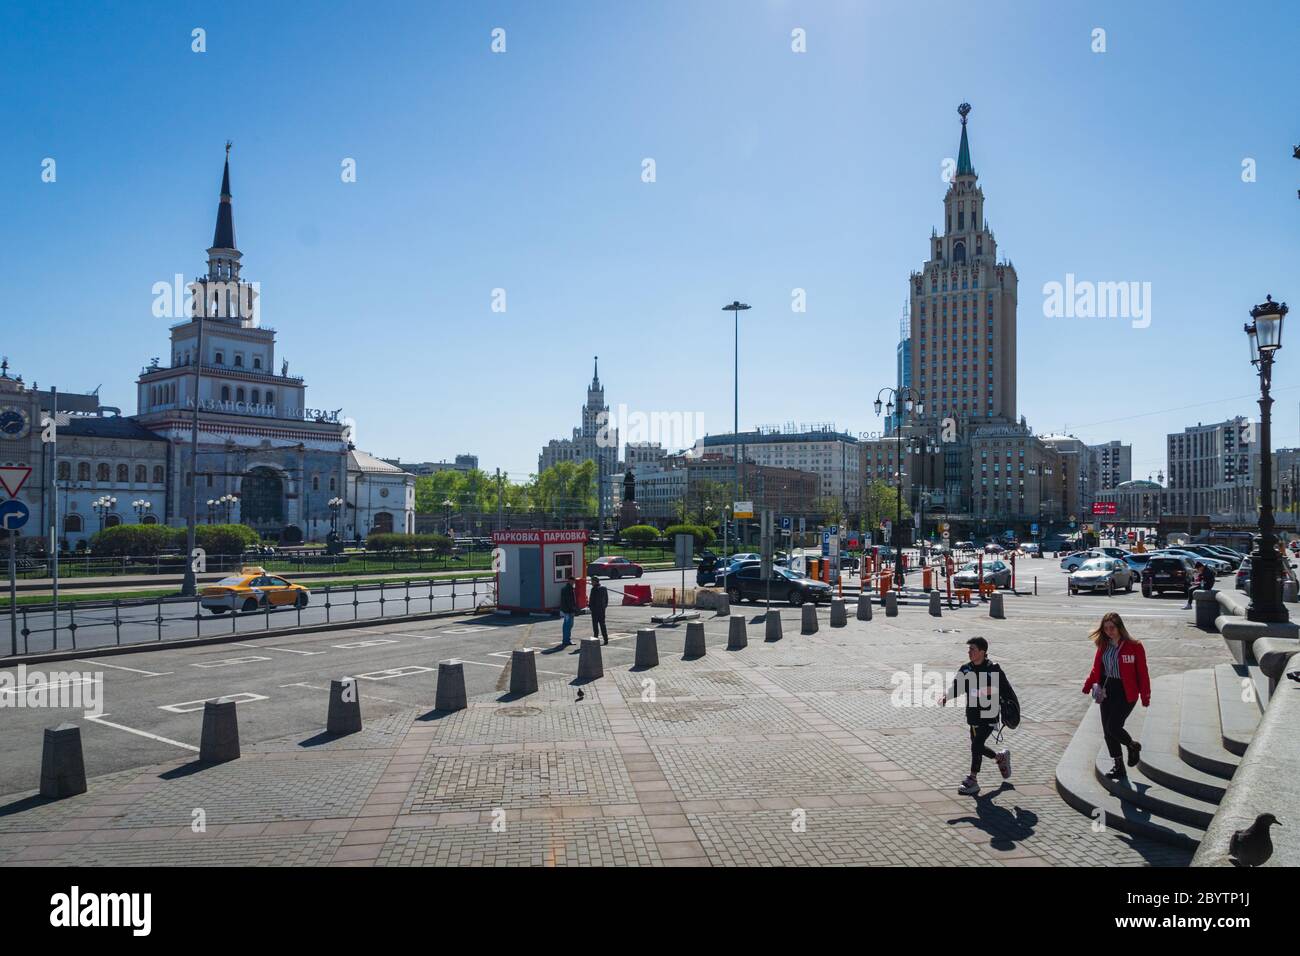 Moskau, Russland - Mai 2019: Blick in die Innenstadt von Moskau mit dem Gebäude der Sieben Schwestern, Stadtbild der Hauptstadt Russlands Stockfoto